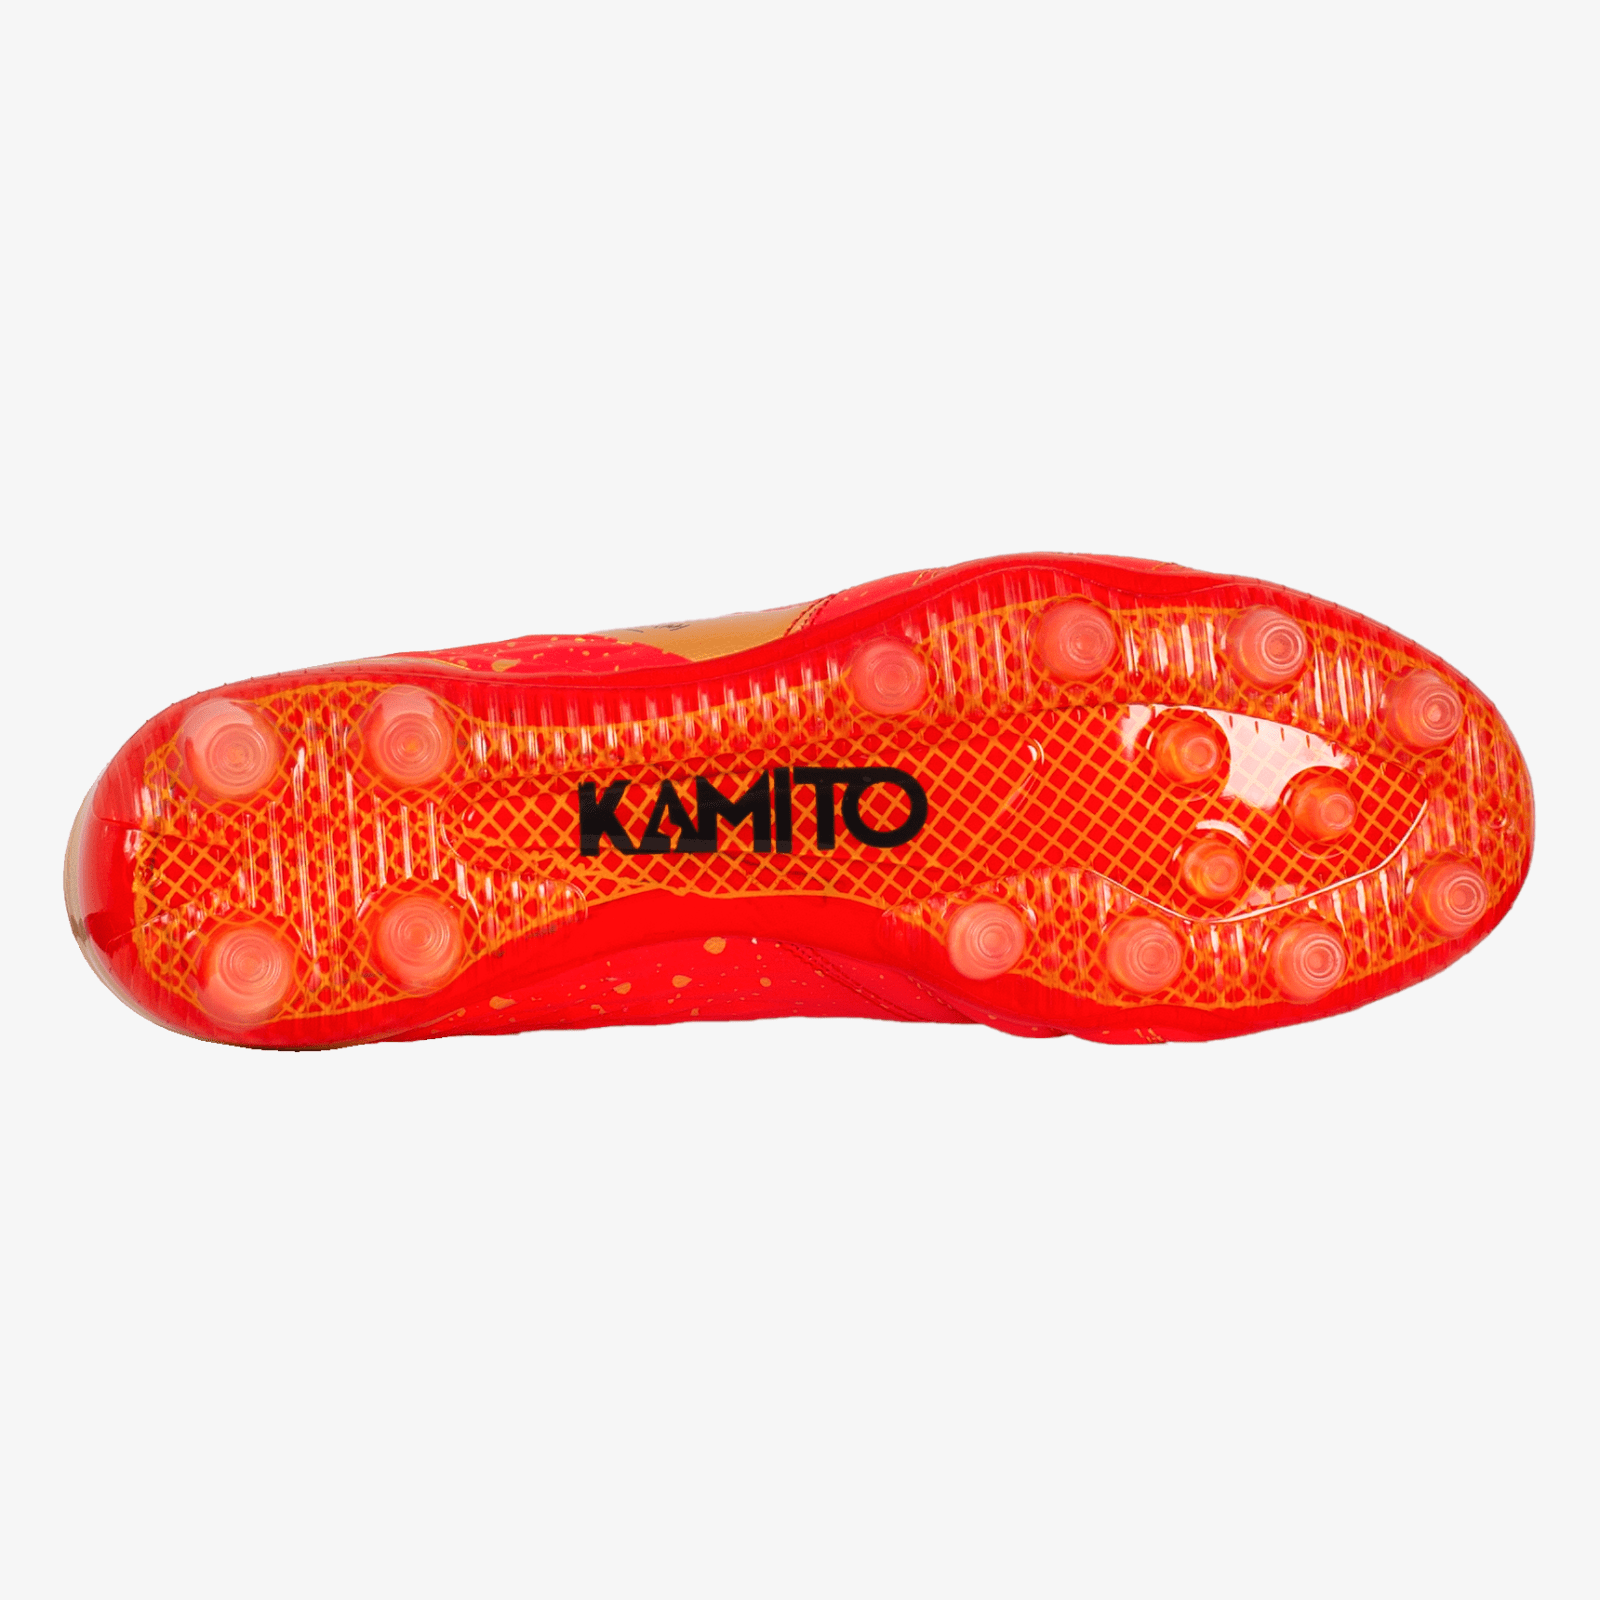 Giày đá bóng sân cỏ tự nhiên đinh cao TA11 FG chính hãng Kamito còn hàng nhiều màu đỏ 1